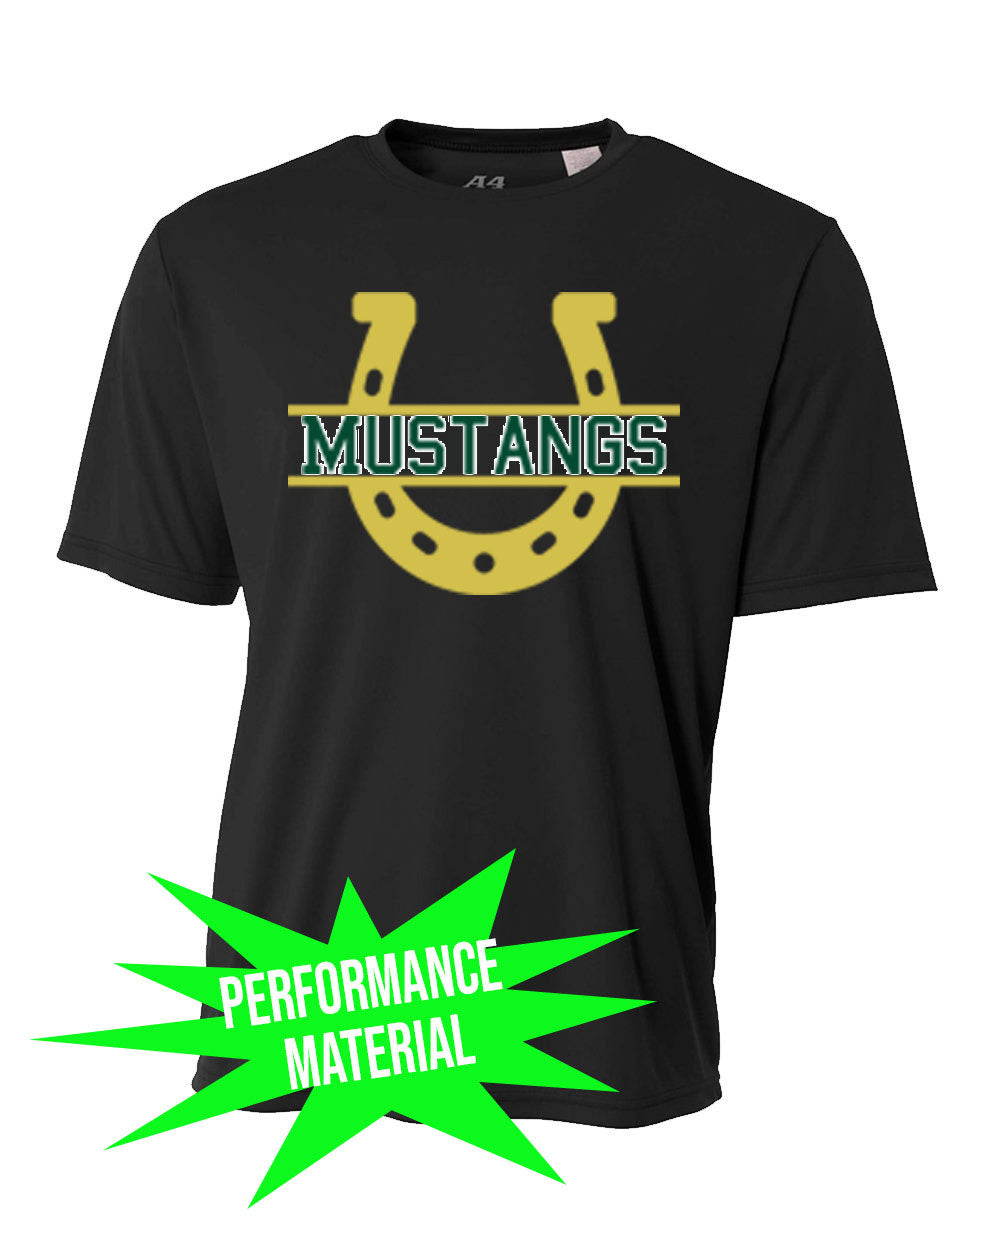 Green Hills Performance Material T-Shirt Design 12